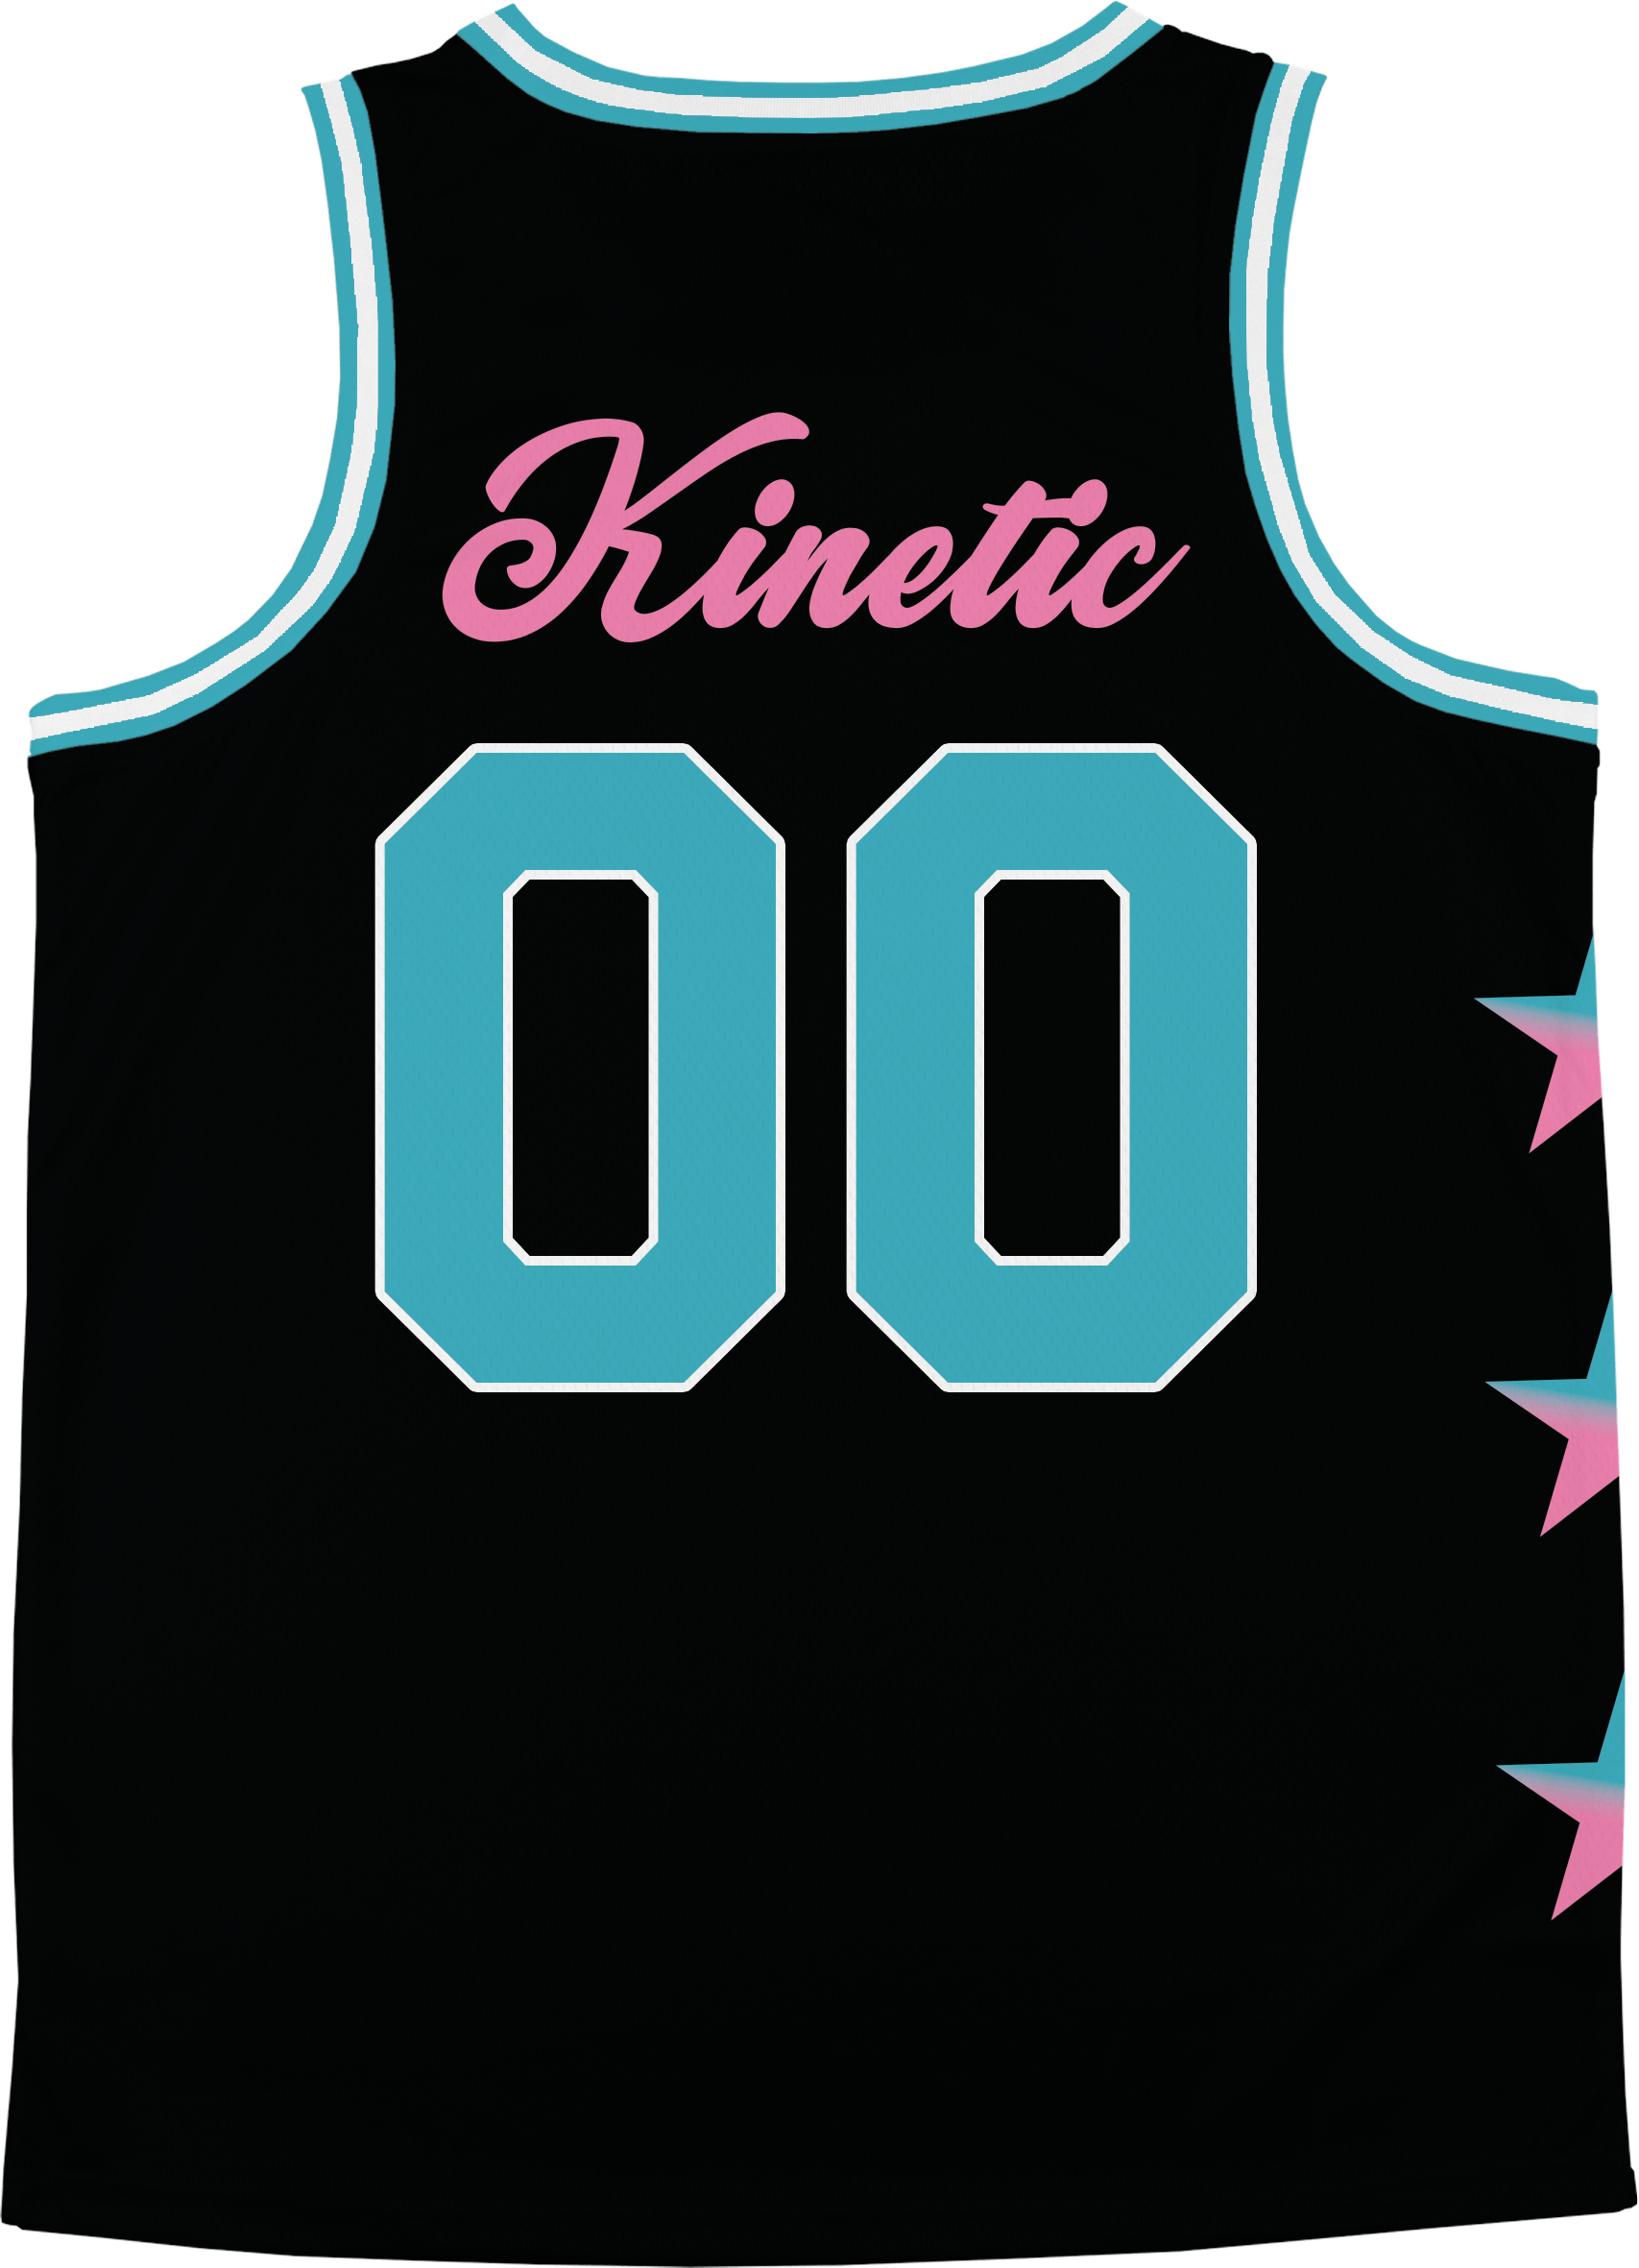 Tau Kappa Epsilon - Cotton Candy Basketball Jersey - Kinetic Society